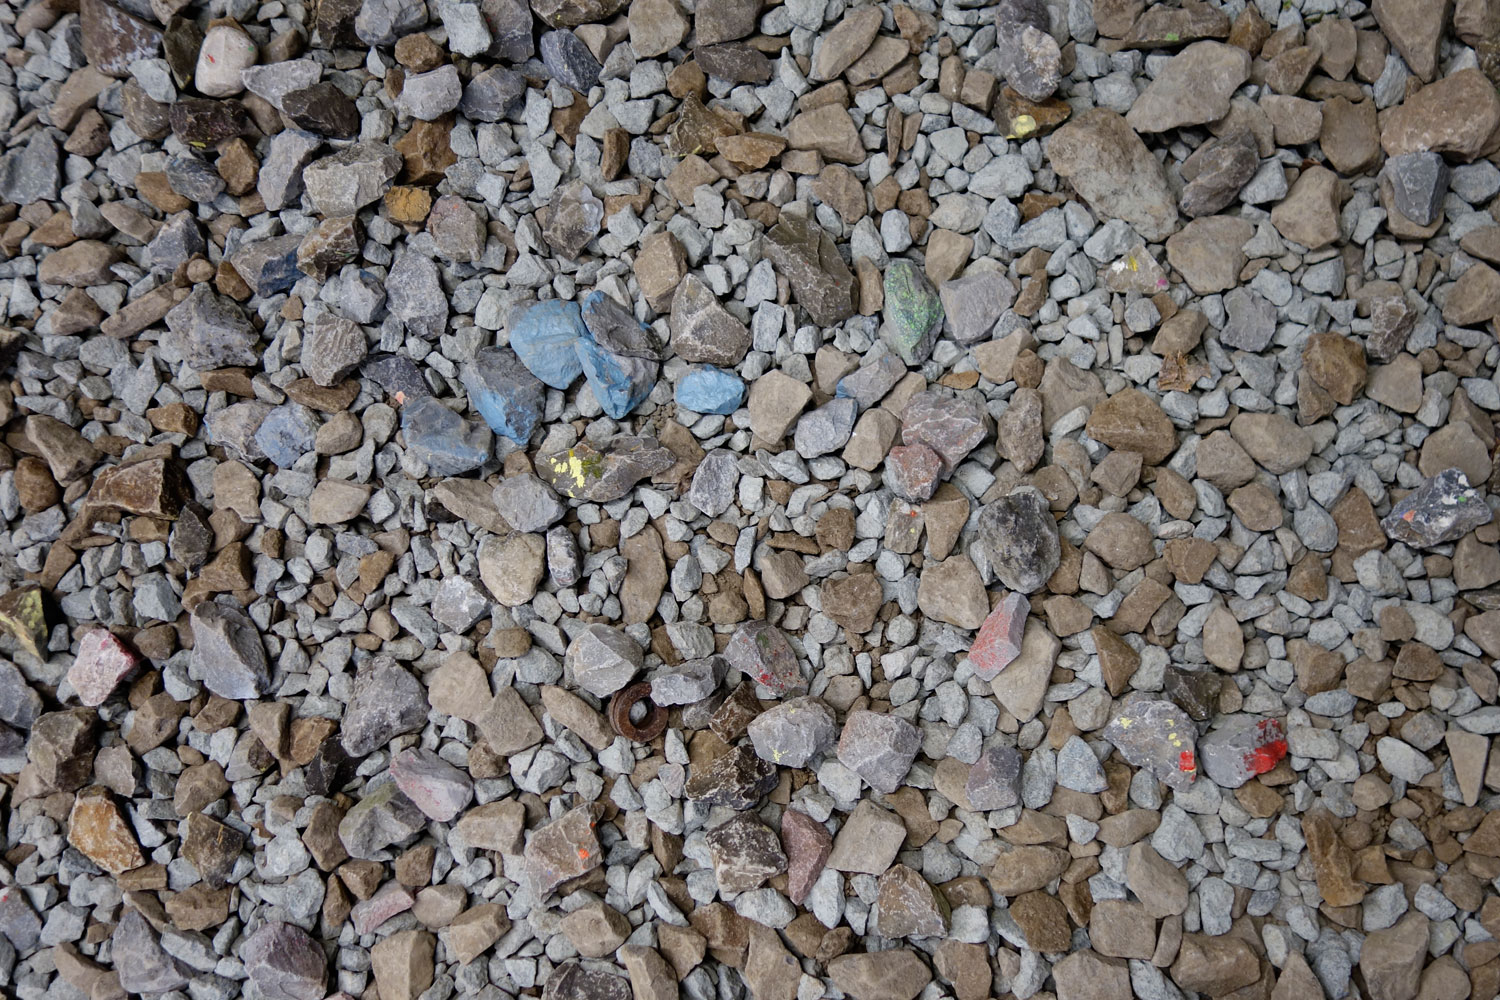 Aerosol stains on crushed stone